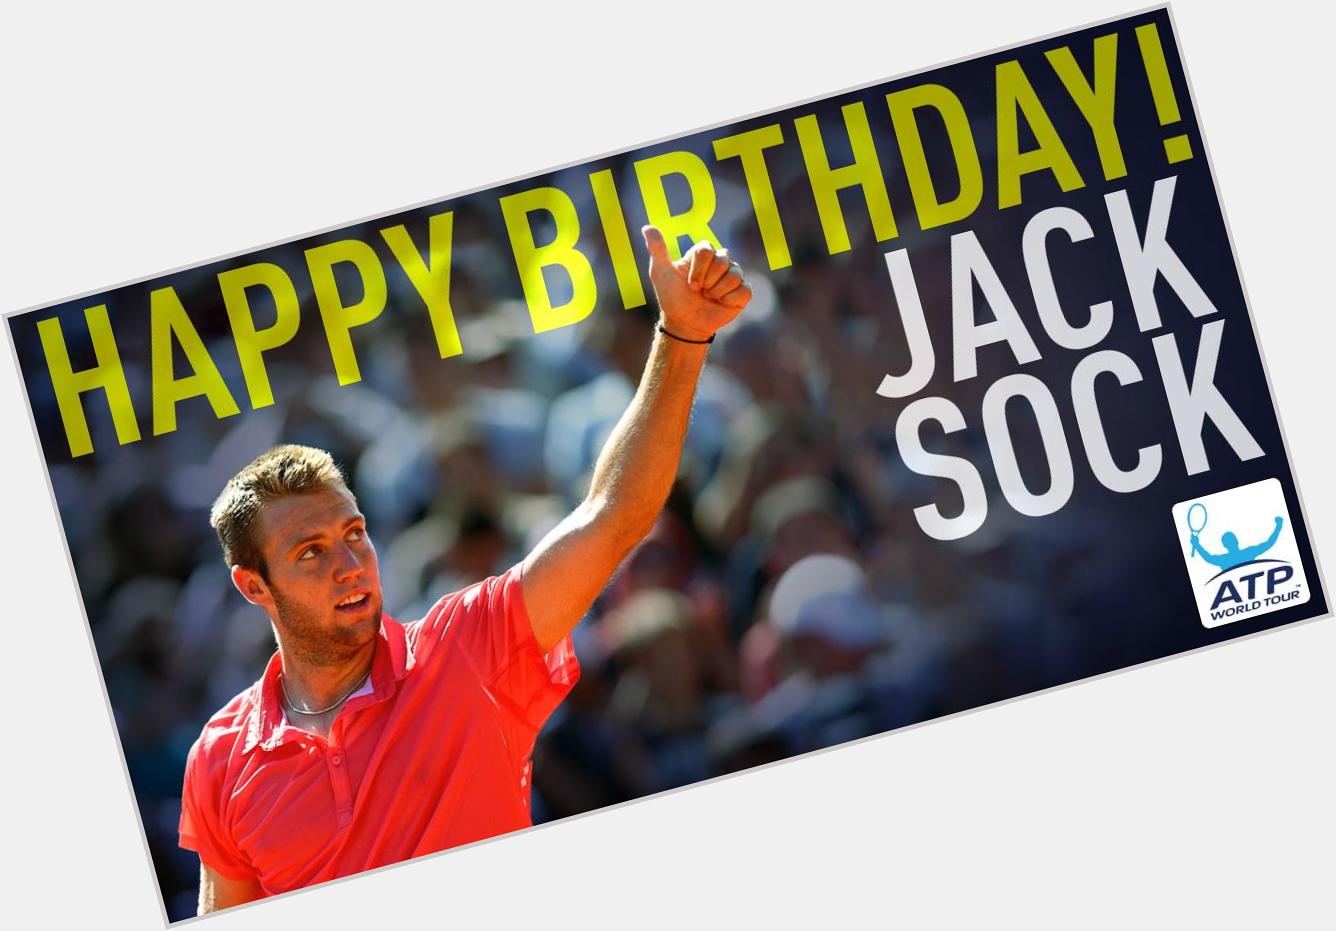 Happy birthday More on Jack:  